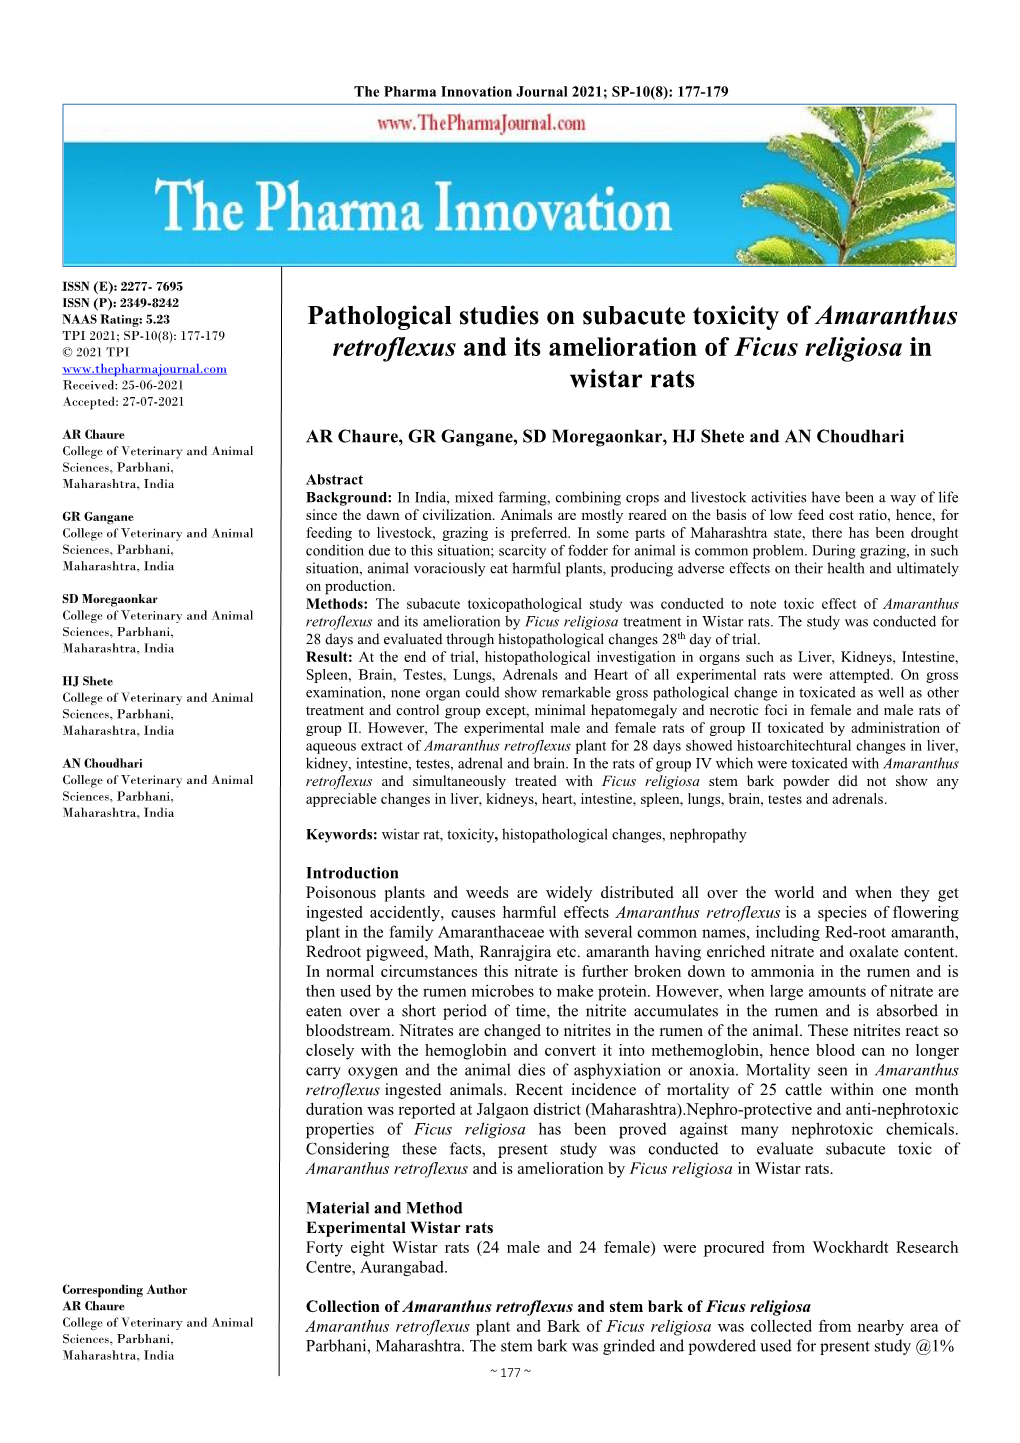 Pathological Studies on Subacute Toxicity of Amaranthus Retroflexus